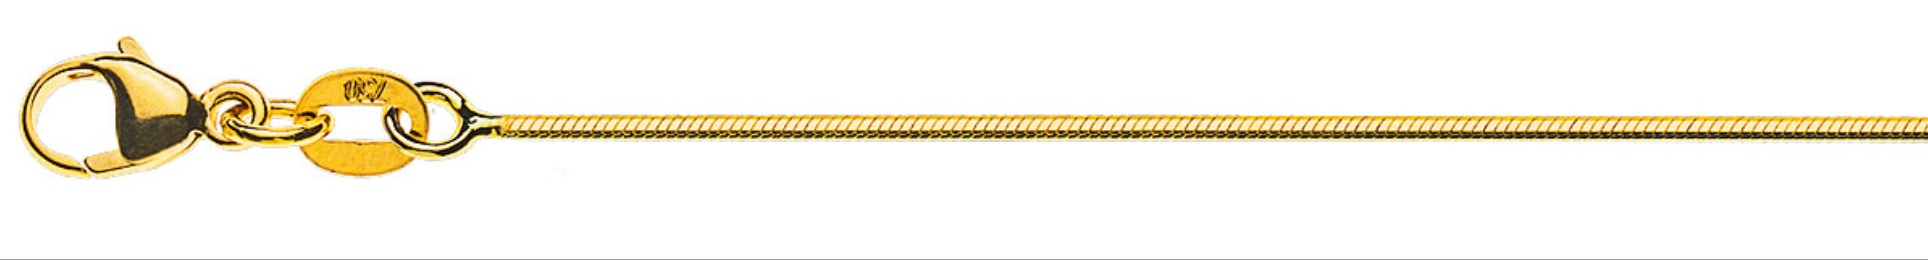 AURONOS Prestige Halskette Gelbgold 18K Schlangenkette diamantiert 38cm 1.0mm